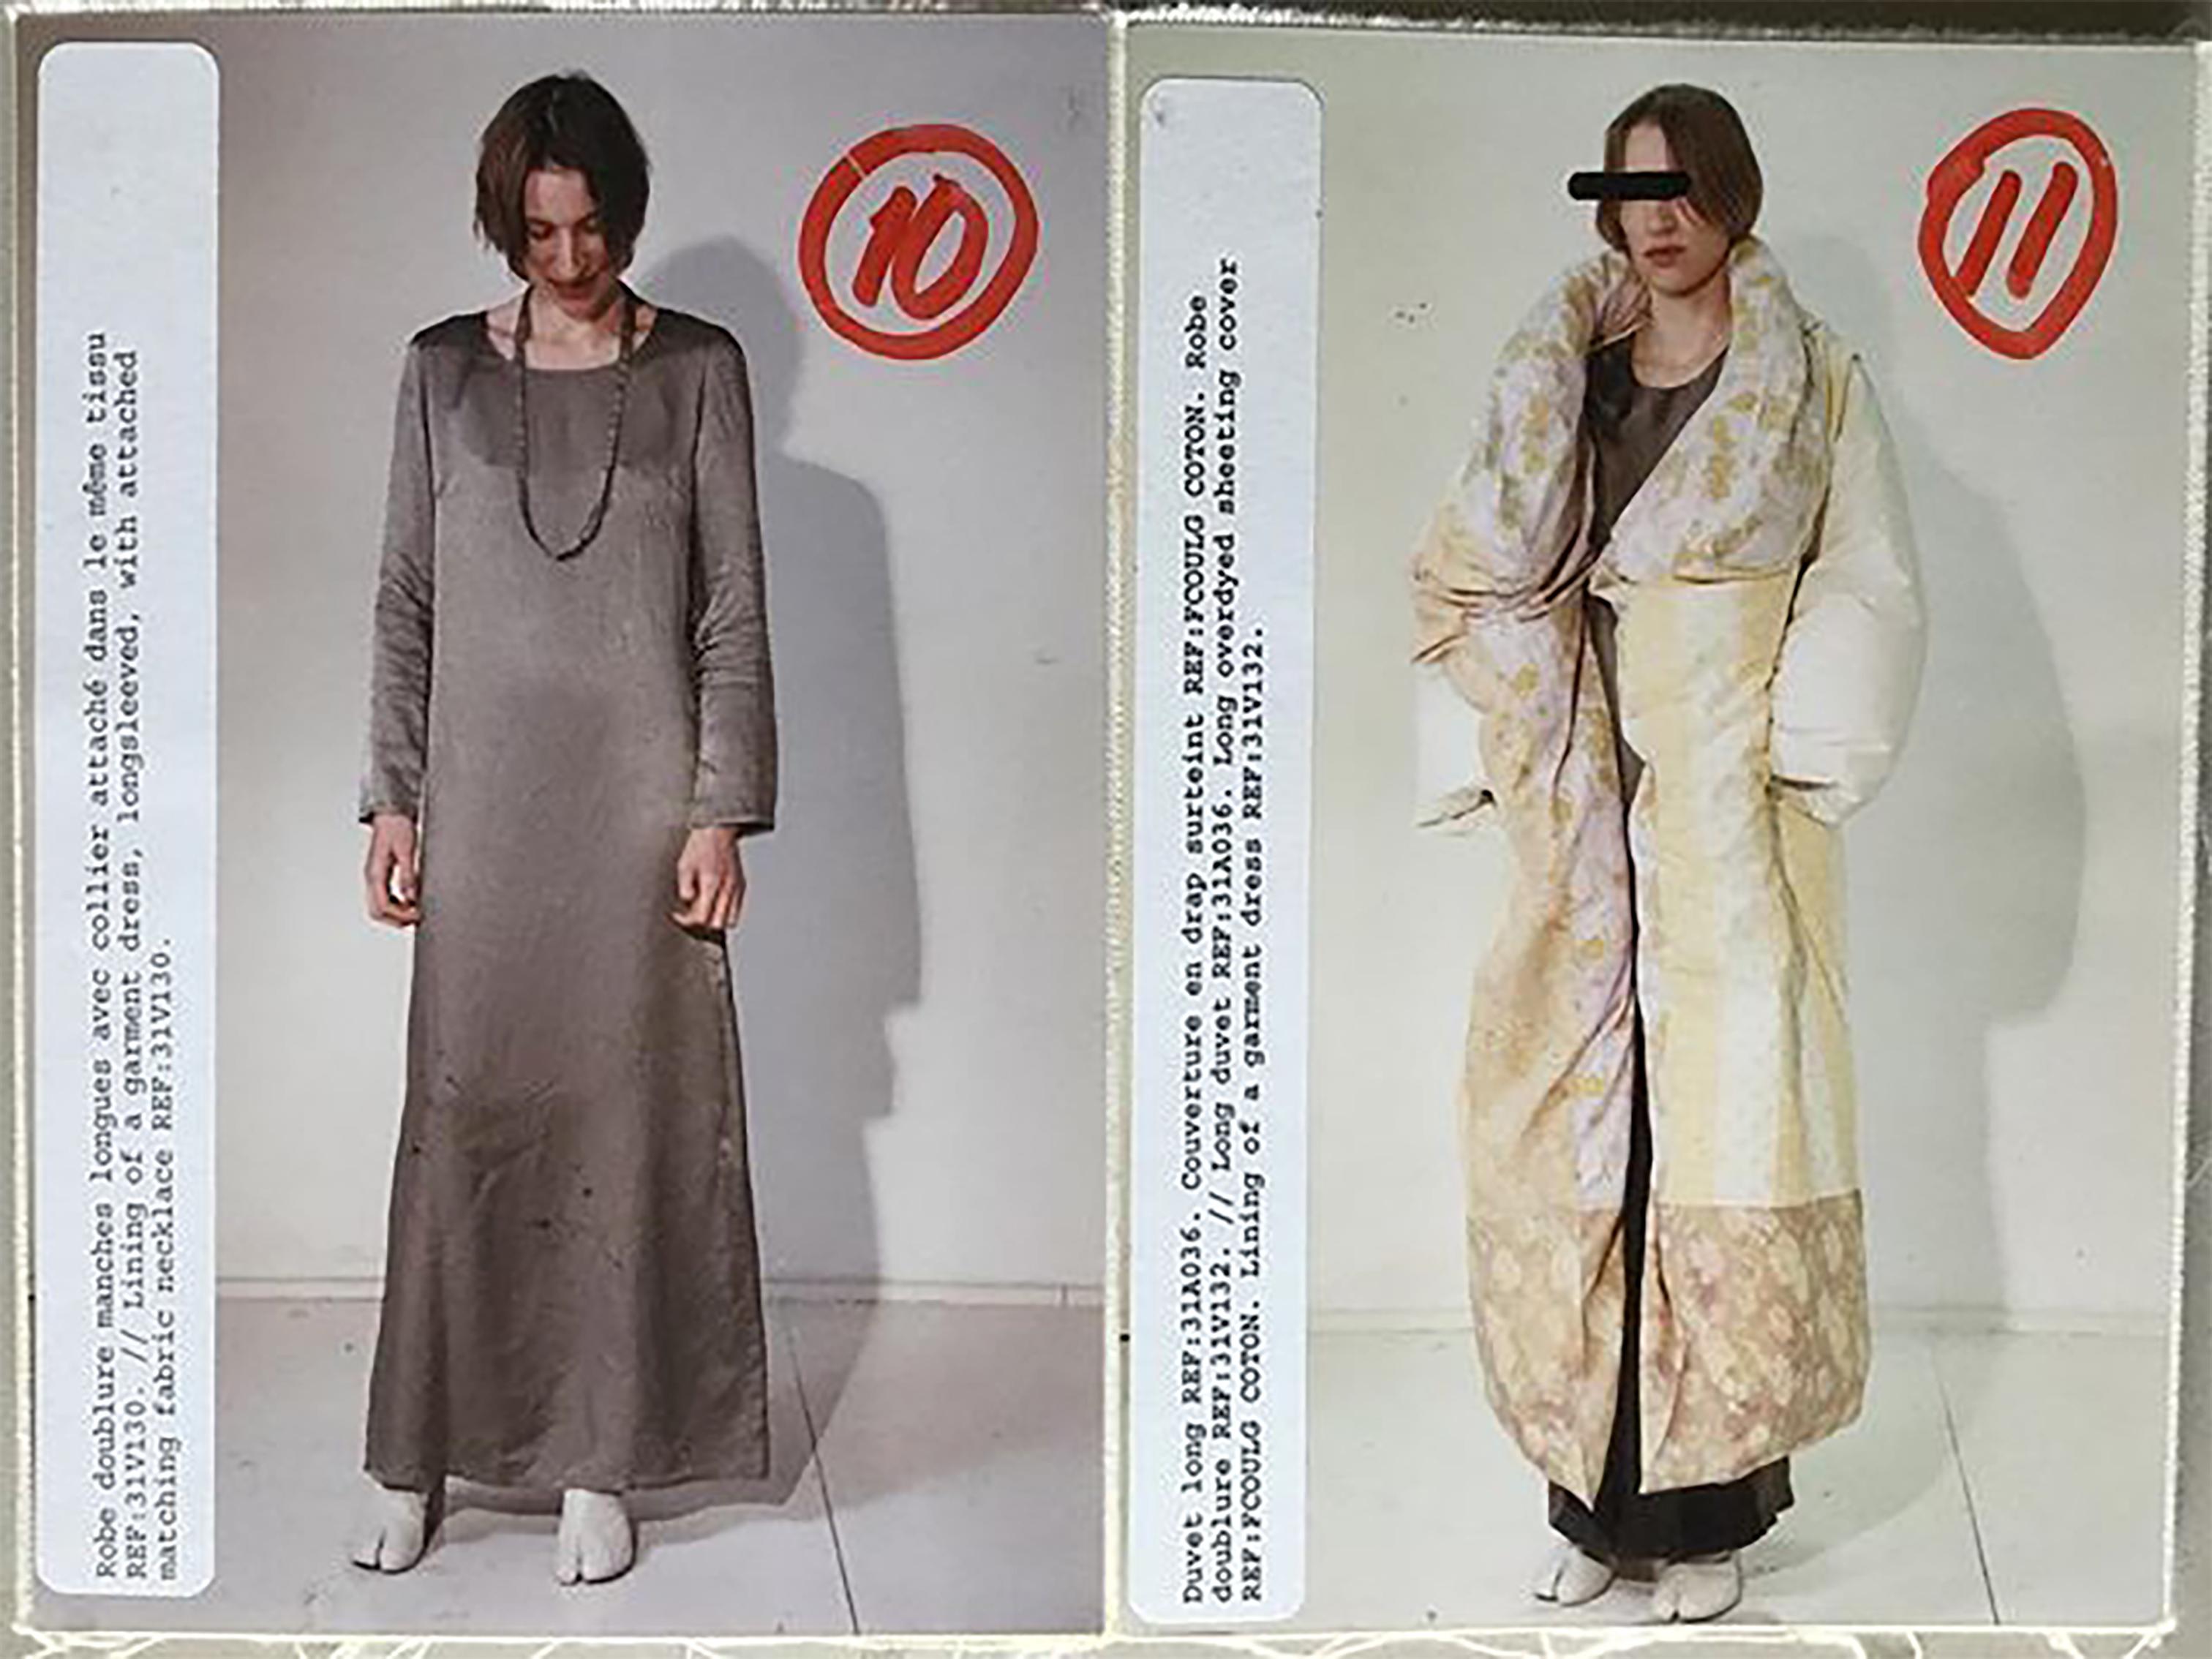 A/W 1999 Maison Martin Margiela Kleid mit langen Ärmeln in rostroter Farbe und 